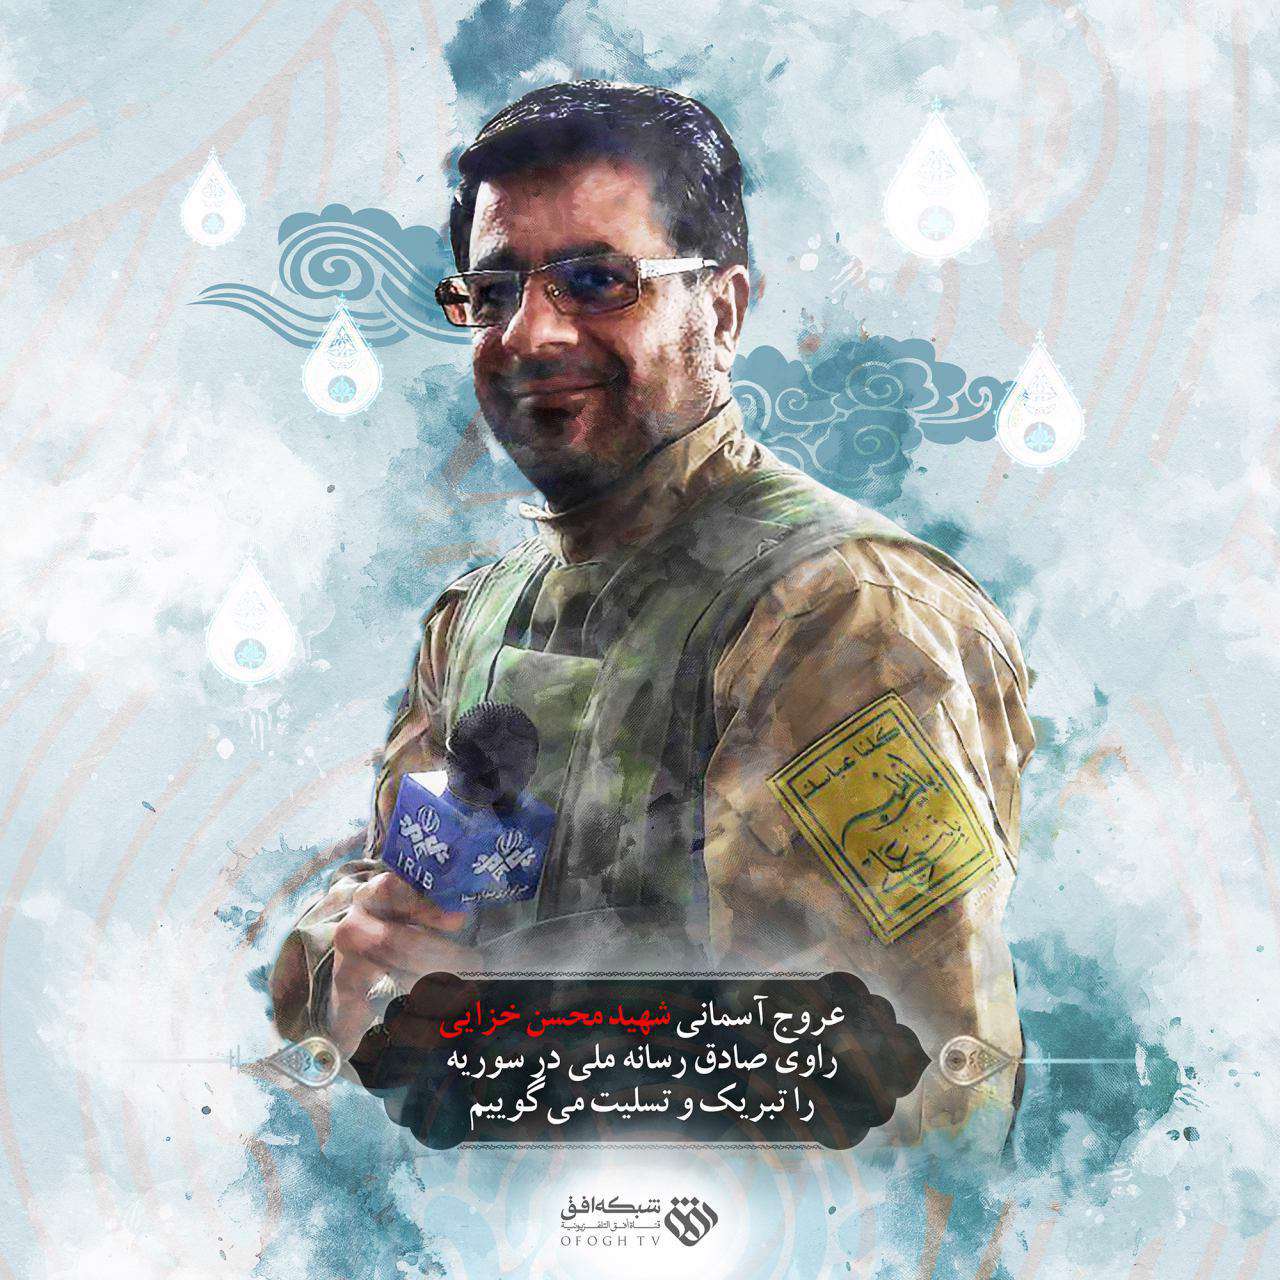 عروج آسمانی شهید محسن خزایی راوی صادق رسانه ملی در سوریه را تبریک و تسلیت می گوییم